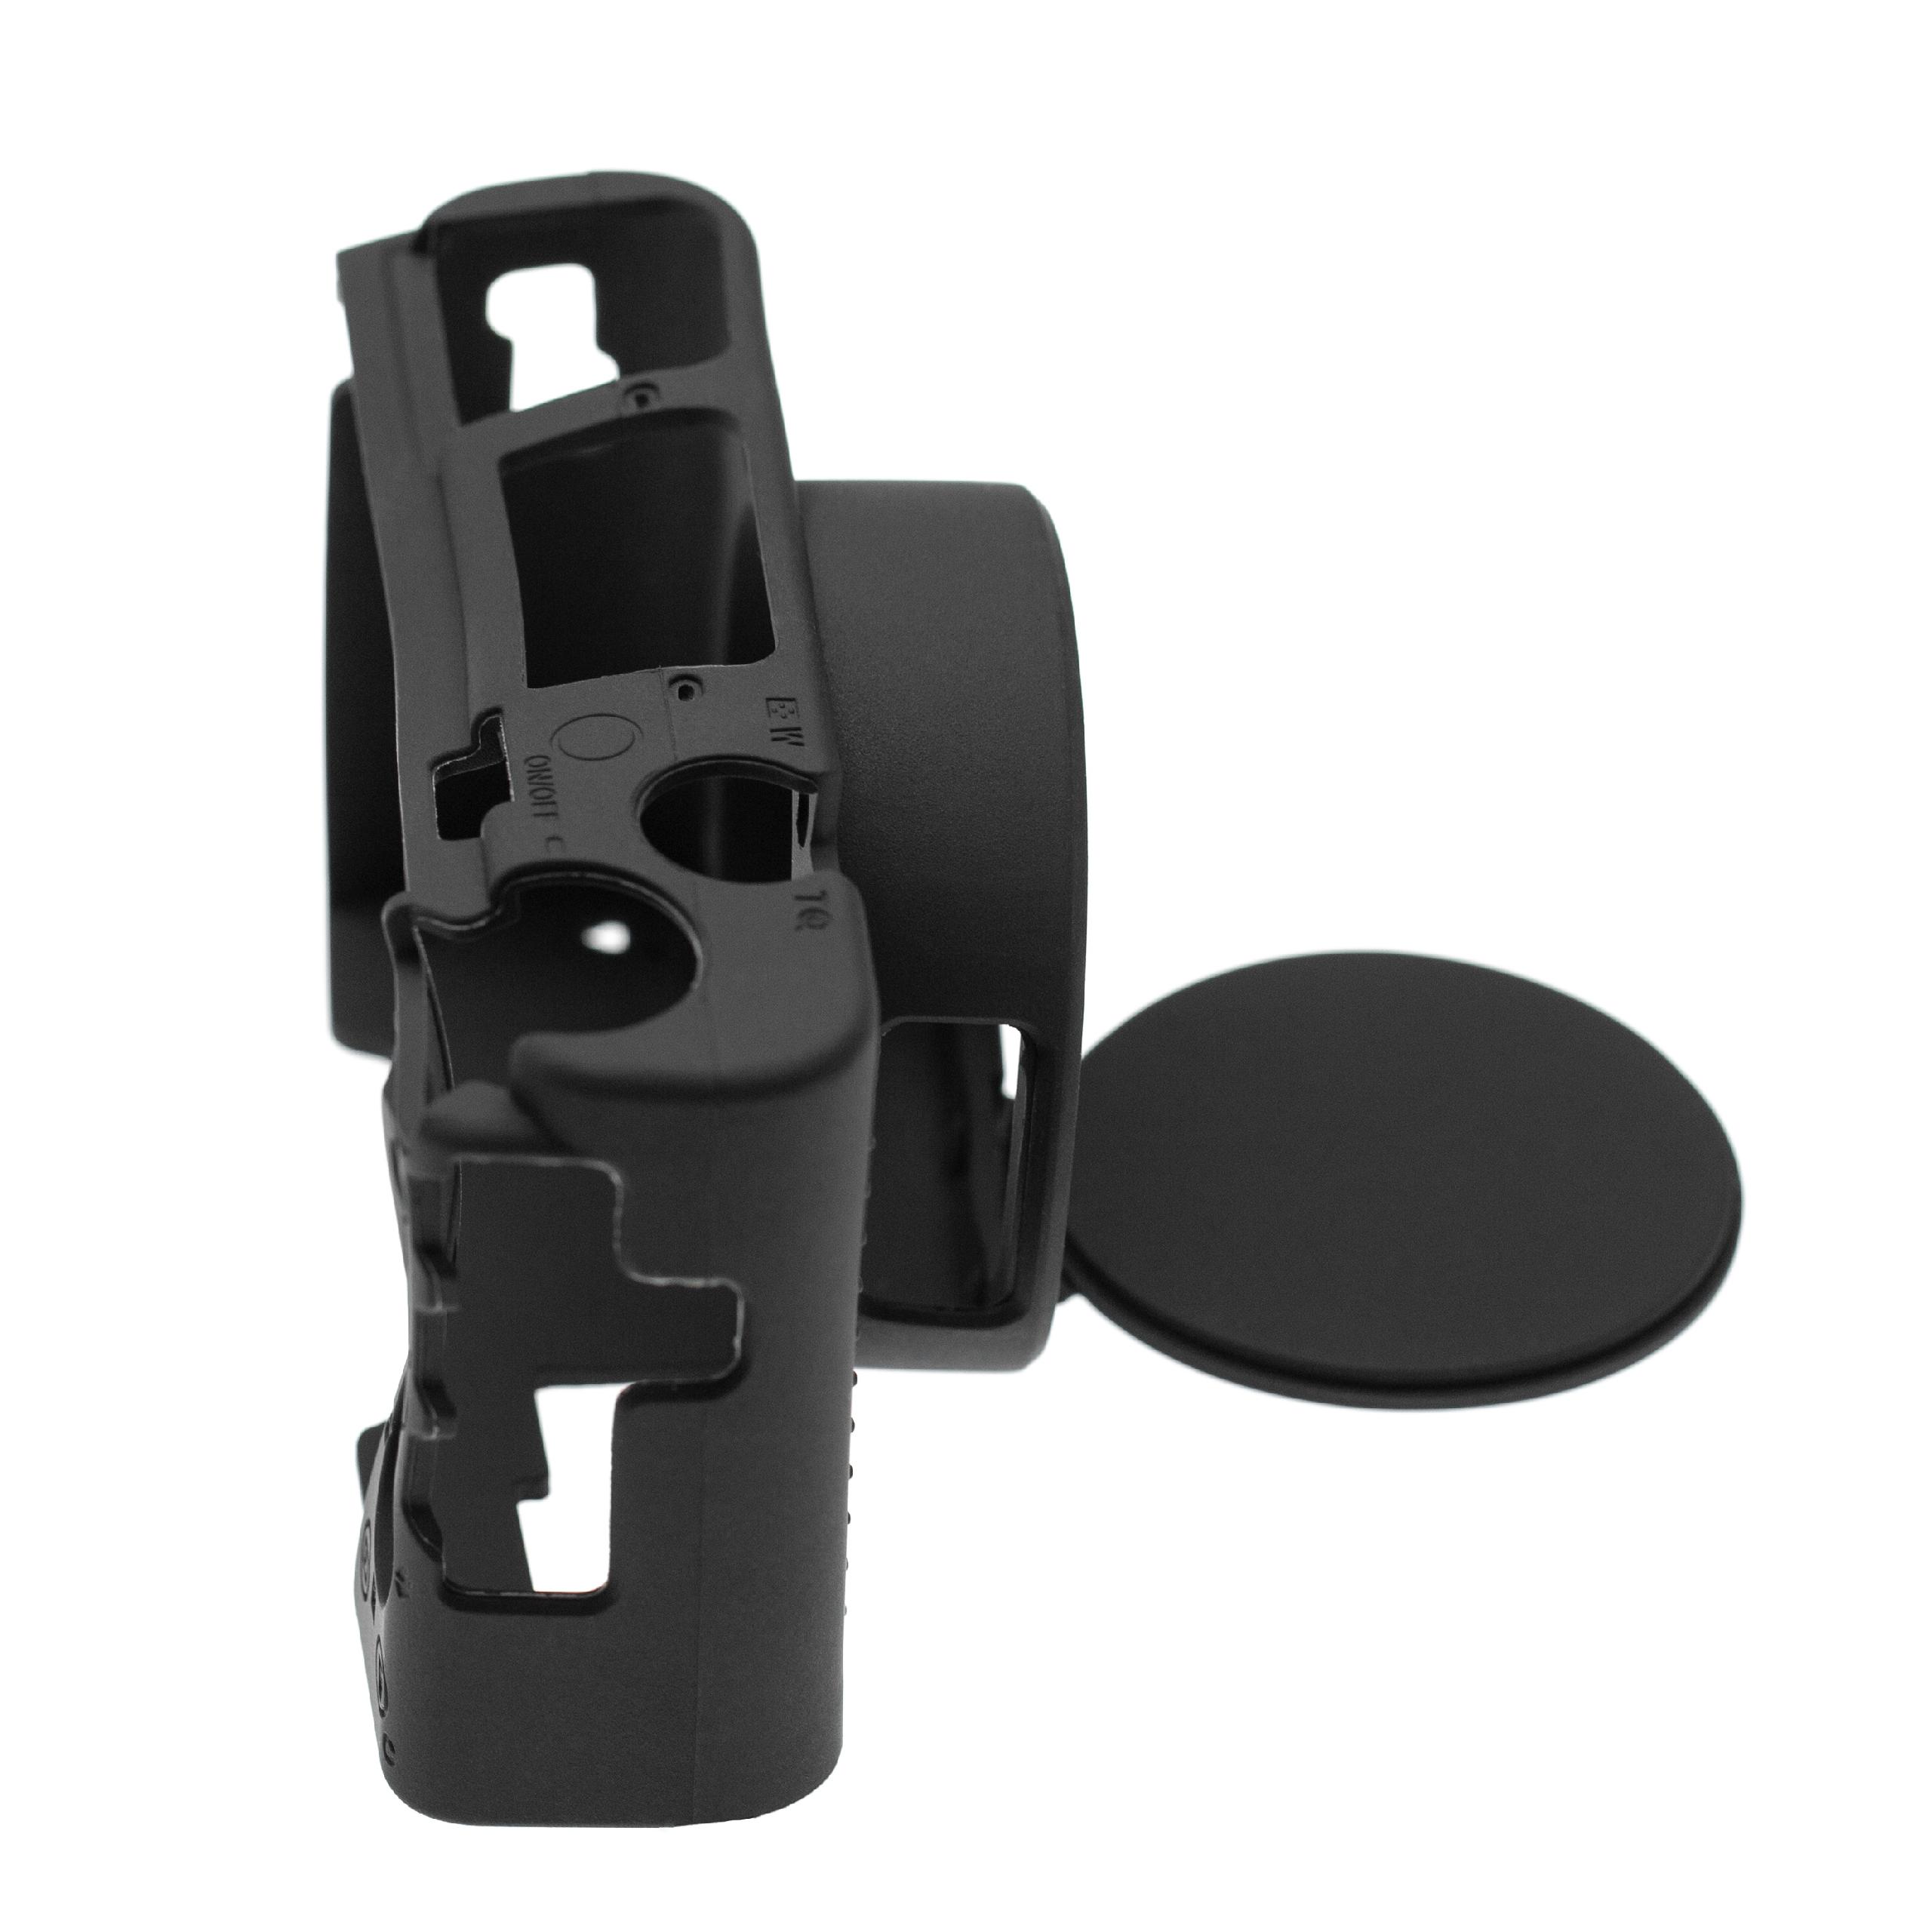 Custodia protettiva per Sony Cyber-Shot DSC-RX100M7 fotocamera - silicone nero, con protezione extra